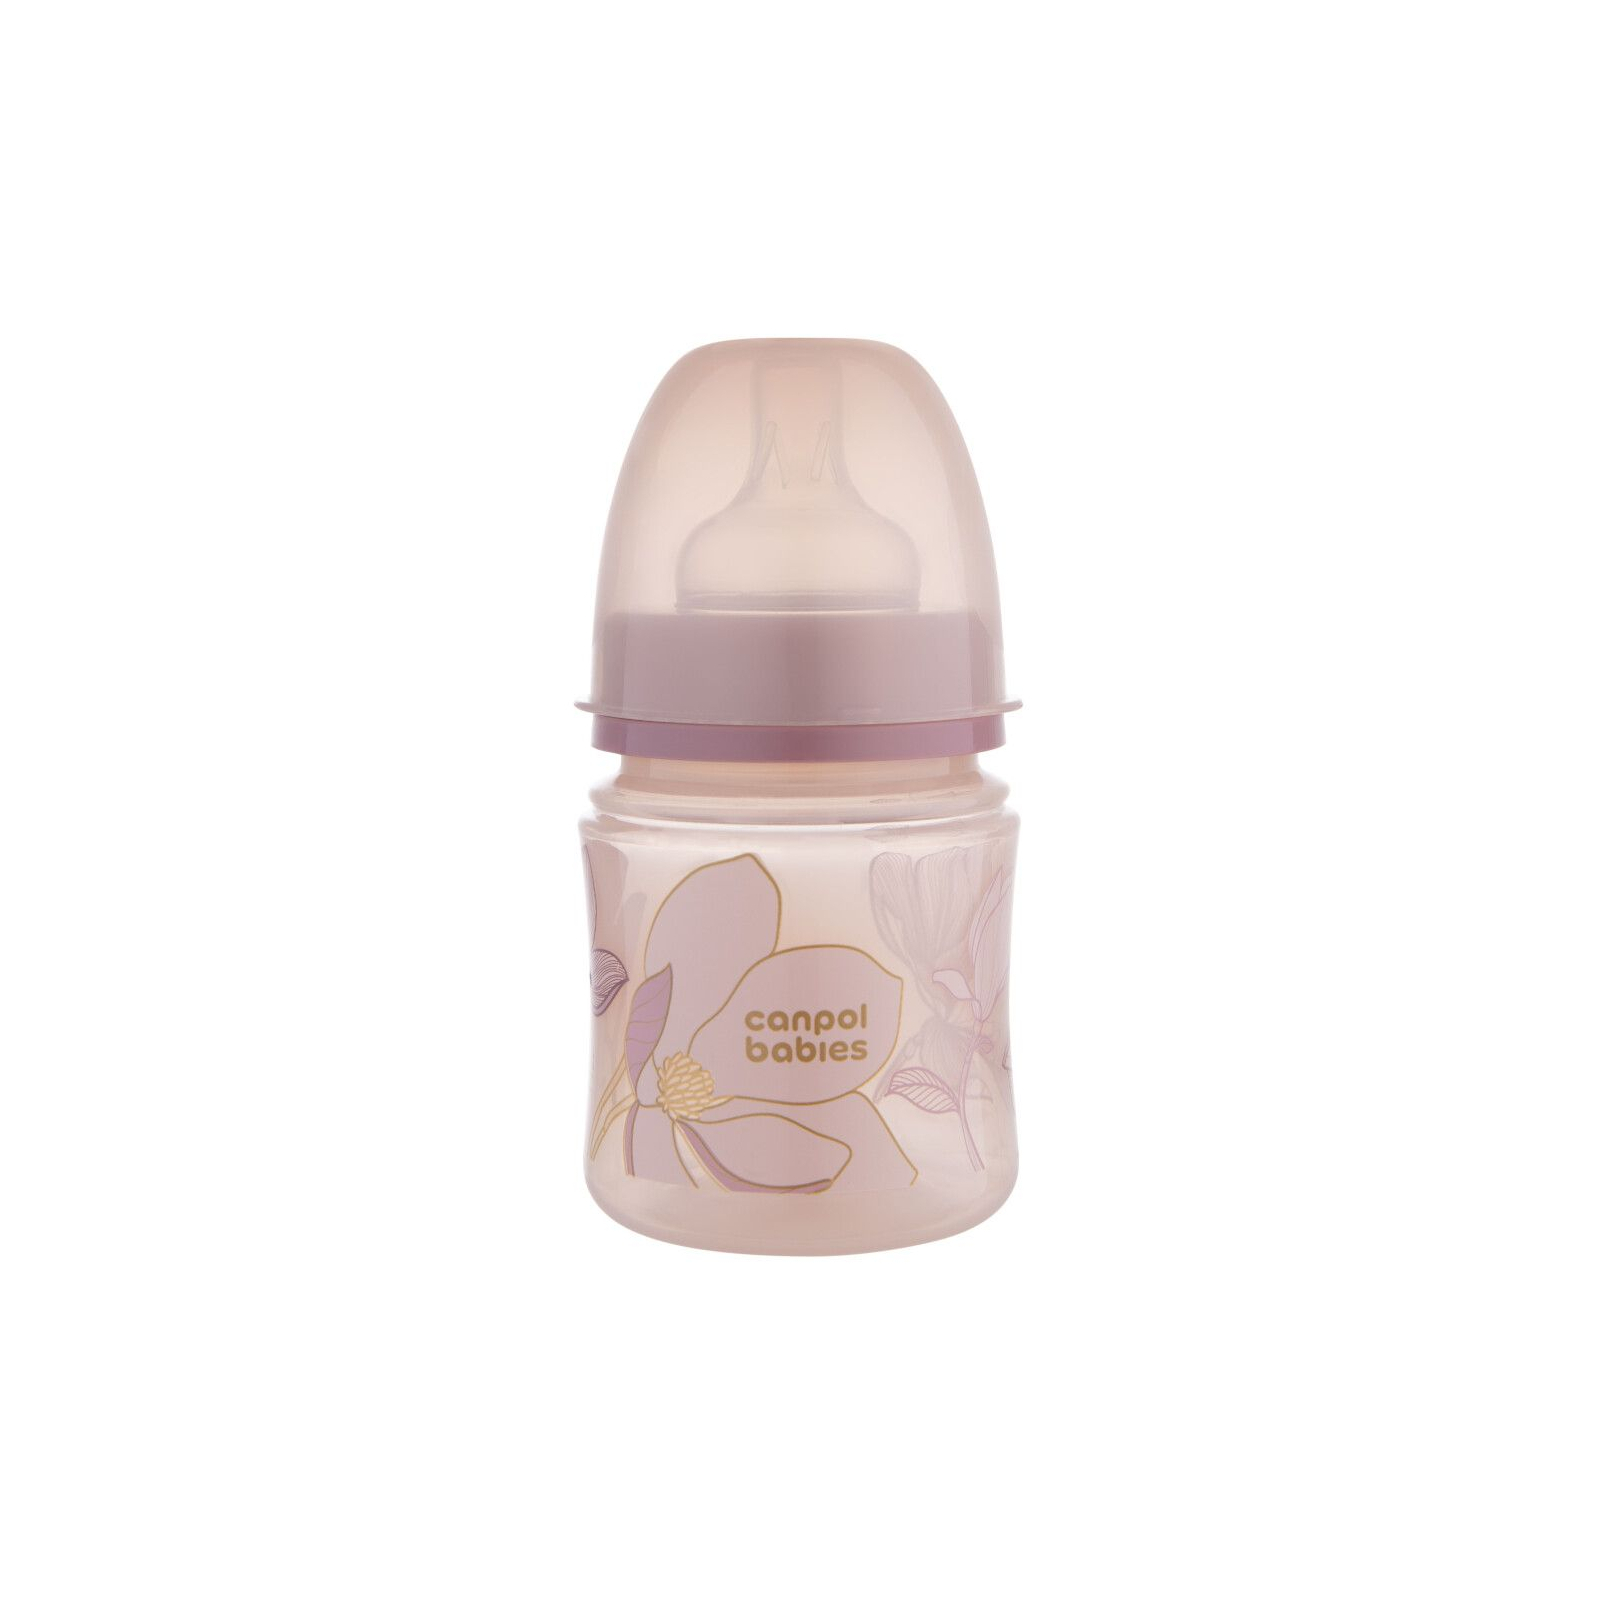 Бутылочка для кормления Canpol babies Easystart GOLD 120 мл антикол. с широк, розовая (35/239_pin)